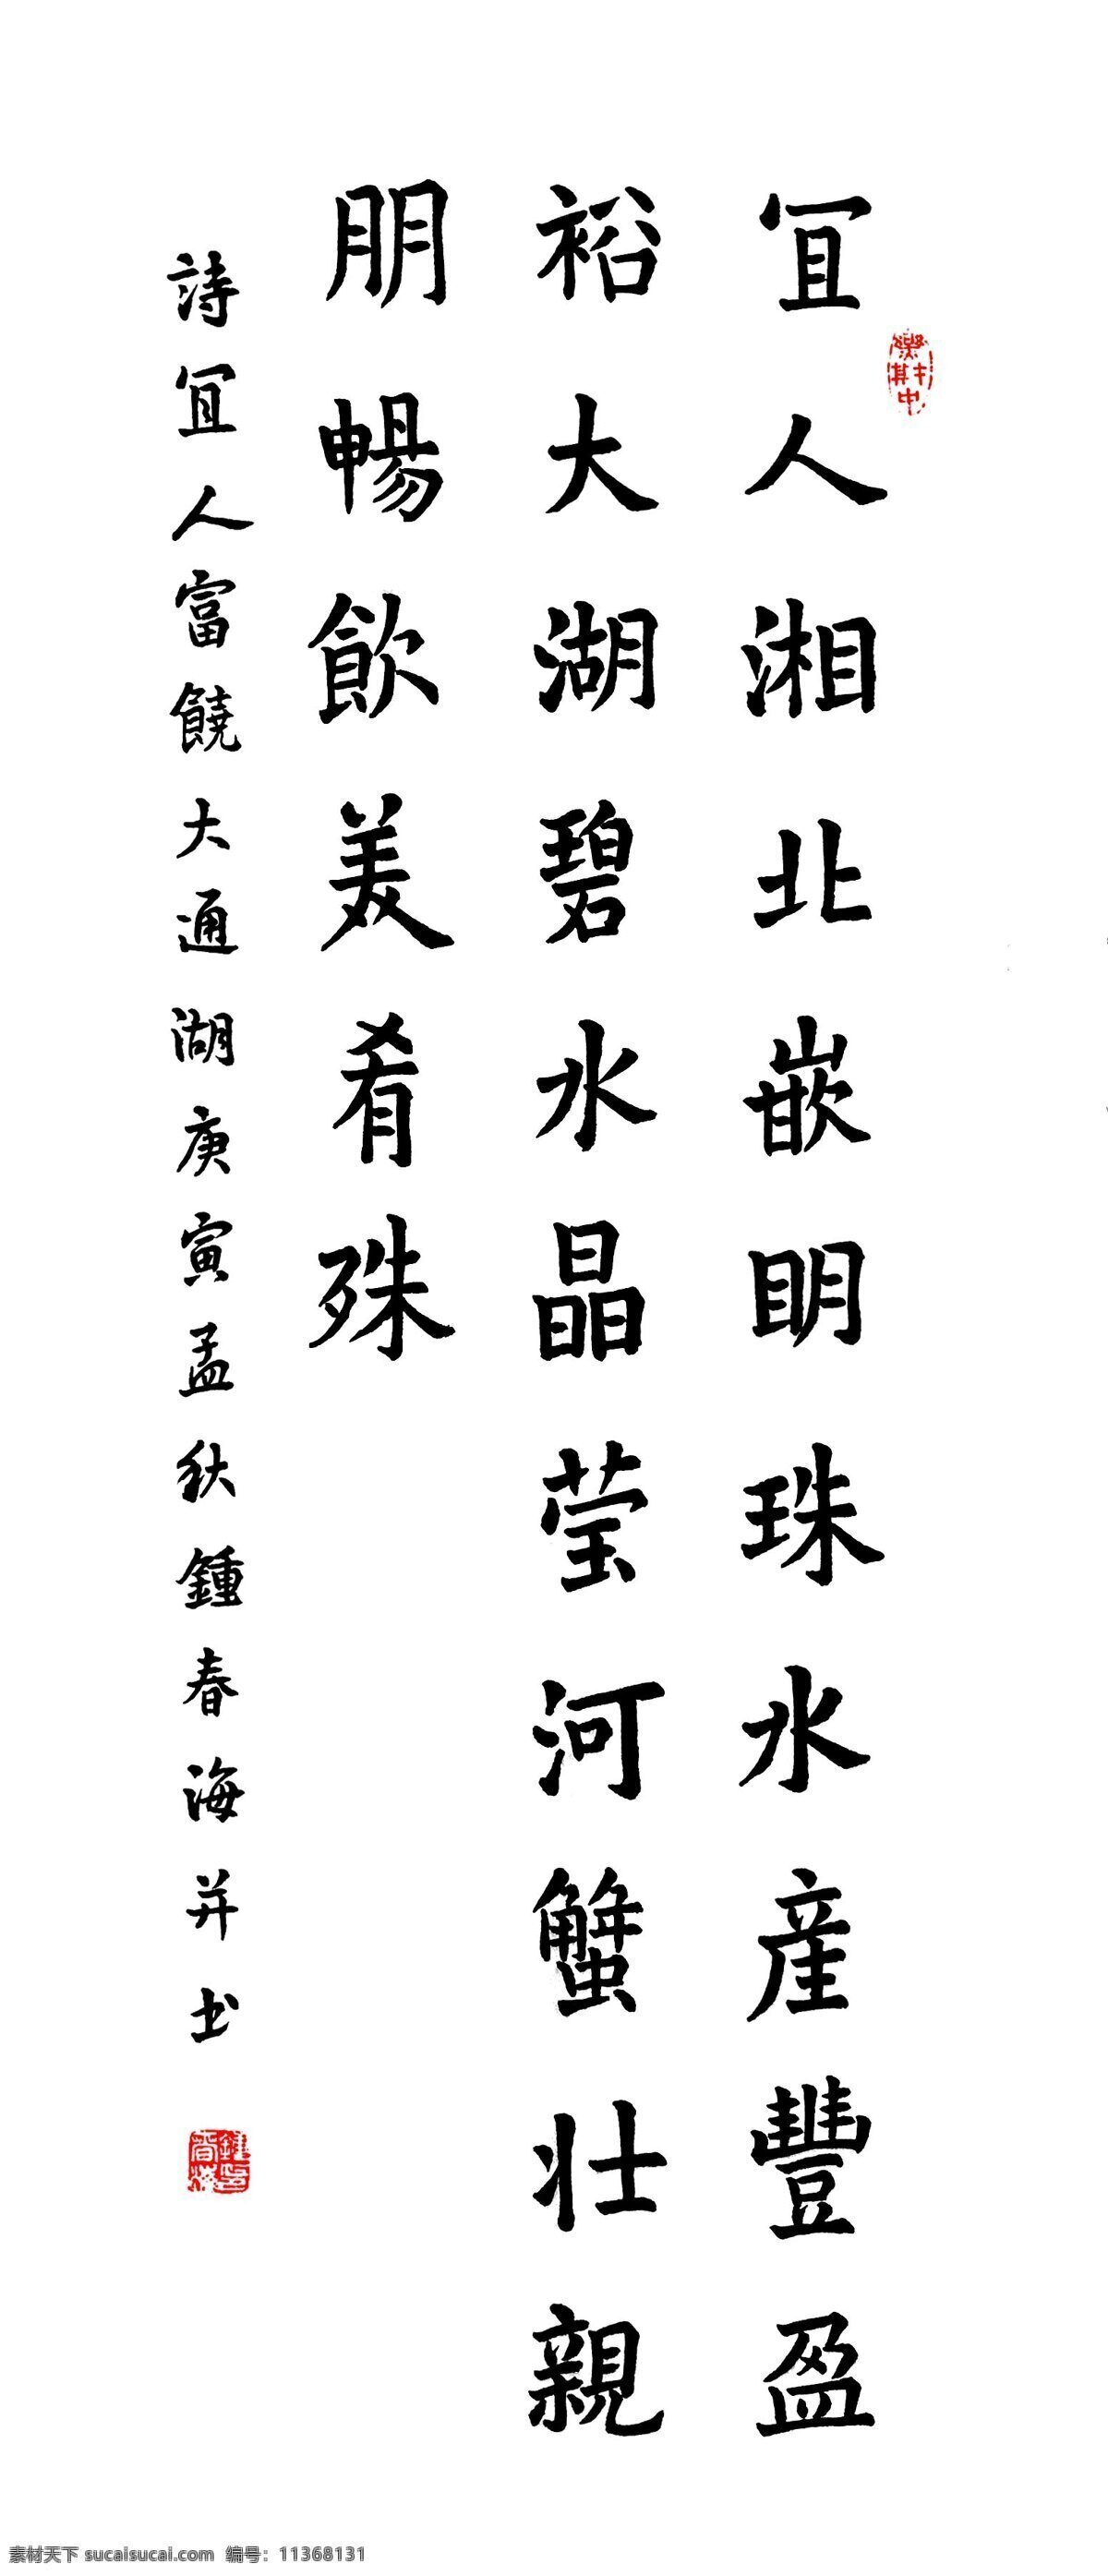 宜人 湘北 嵌 明珠 绘画书法 诗词 诗歌 诗句 文化艺术 印章 章子 中国书法 乐在其中 装饰素材 雕刻 图案